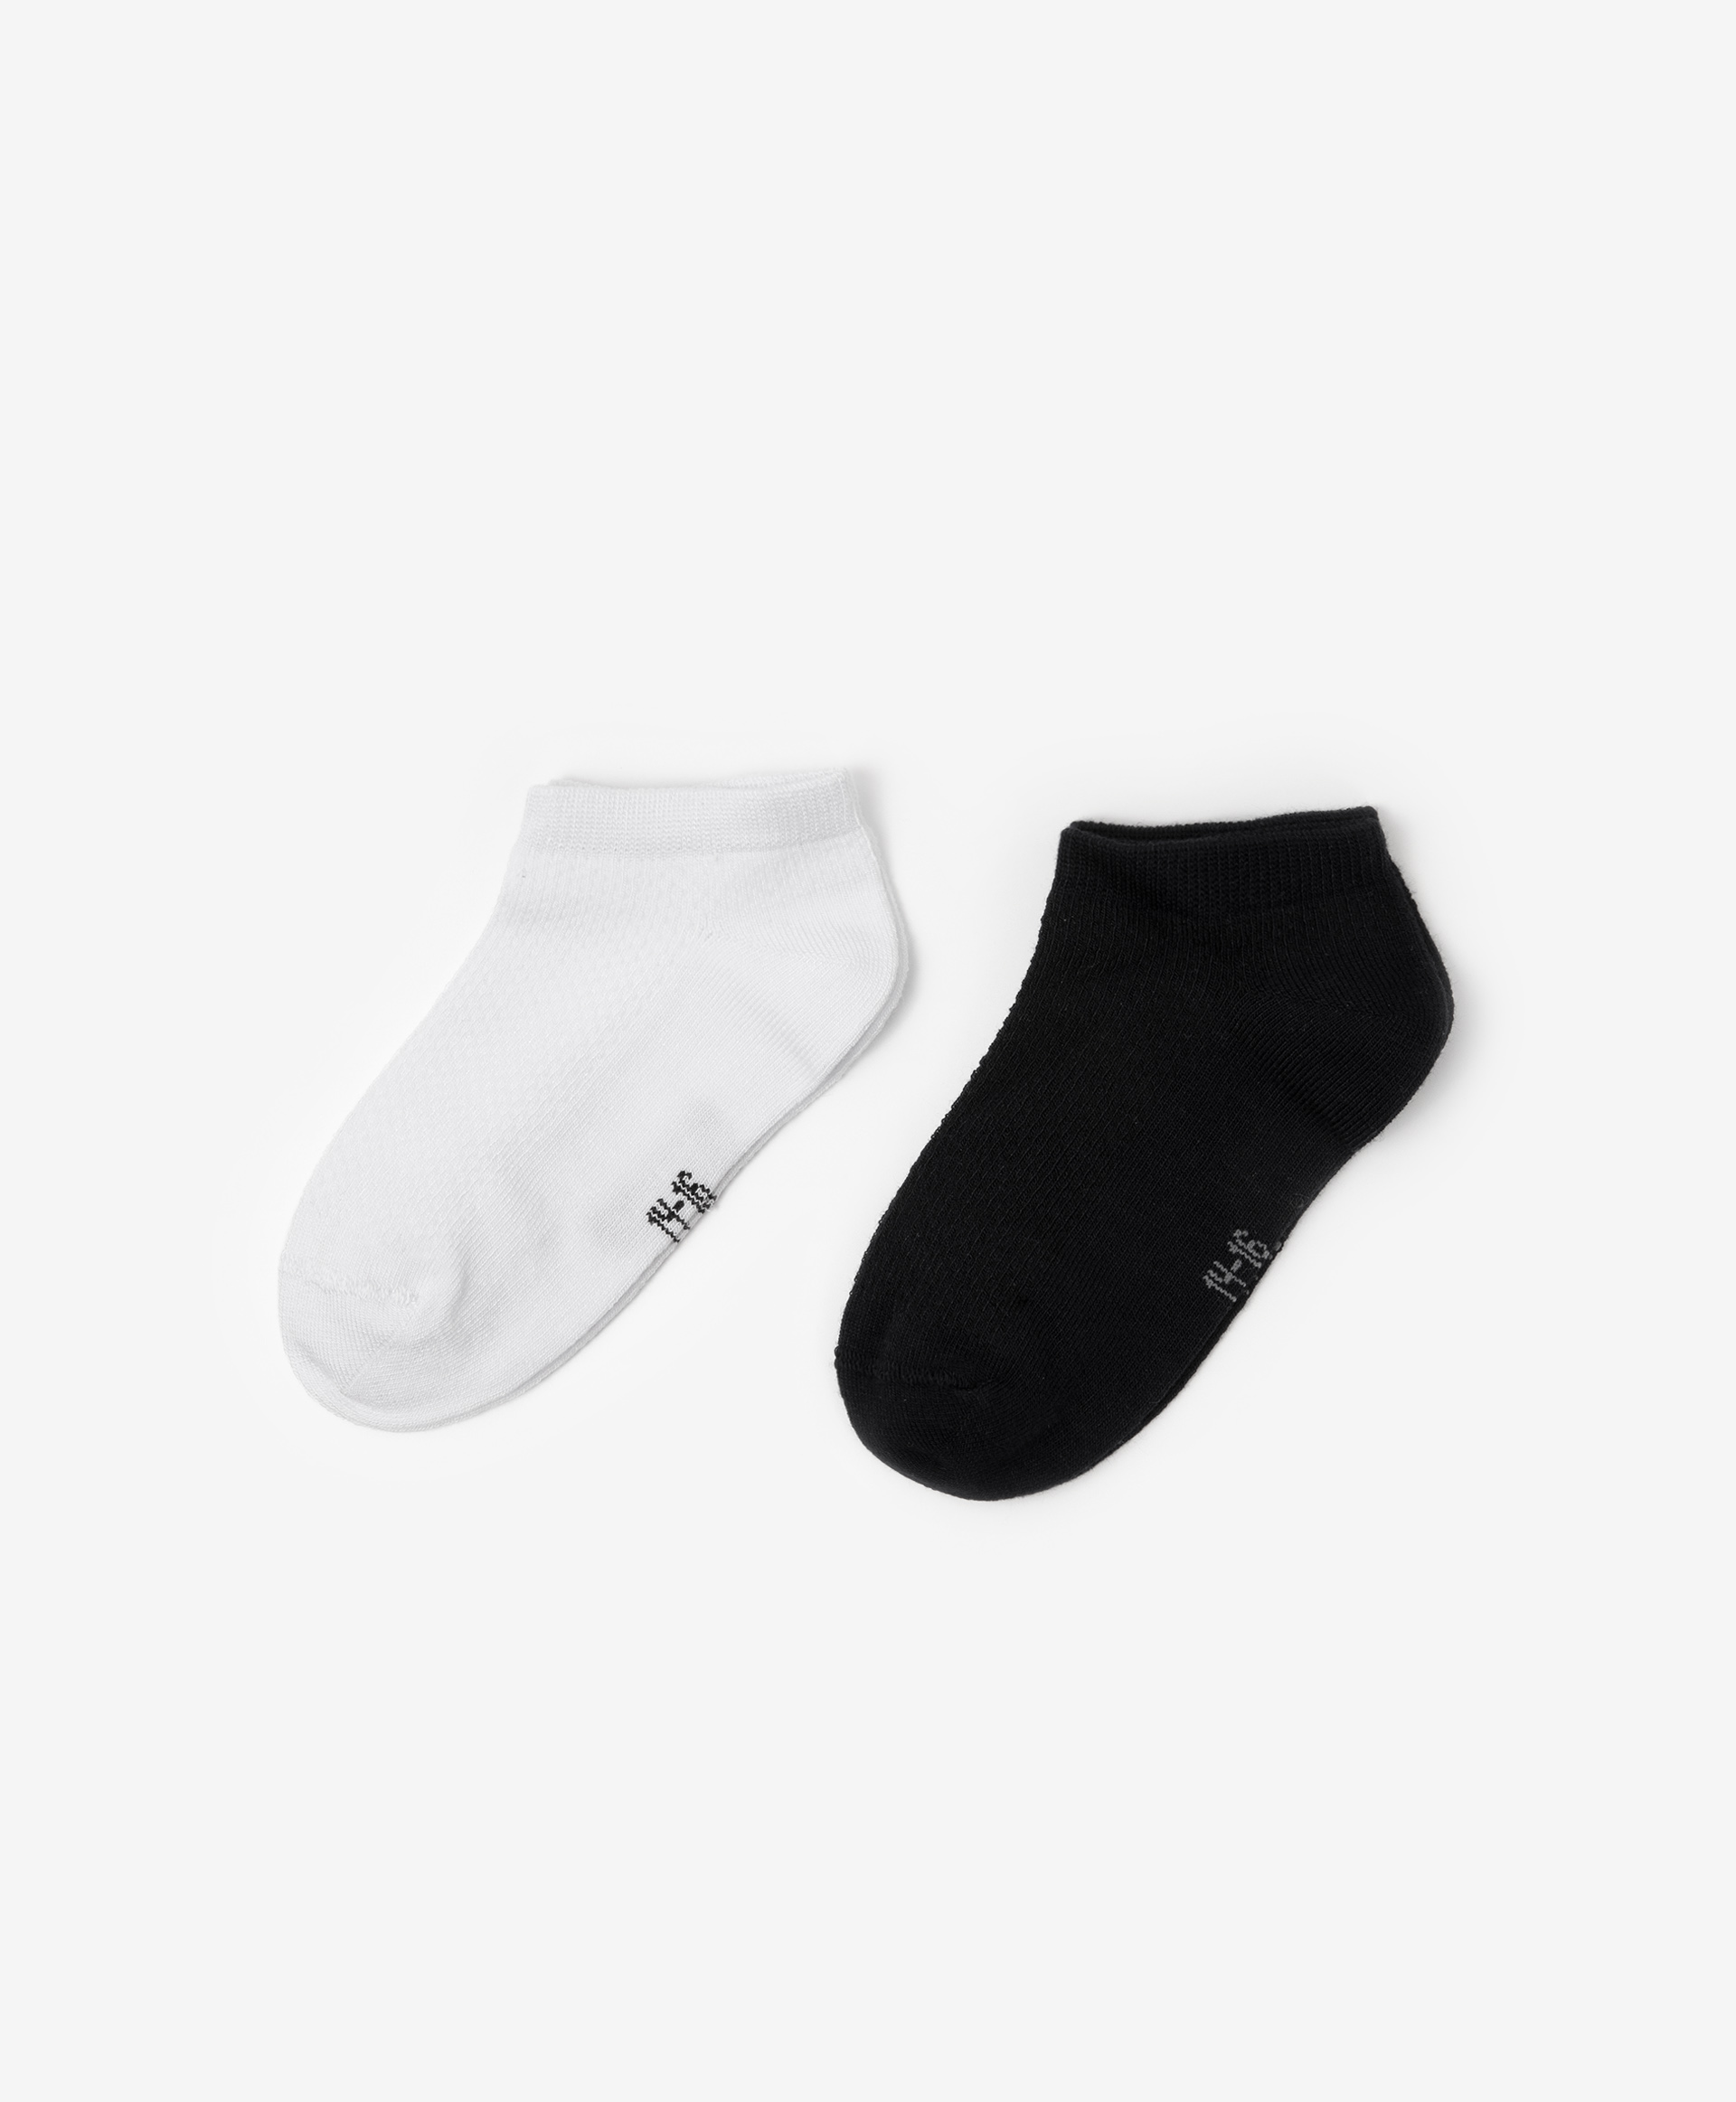 Носки хлопковые короткие Gulliver 20000UC8509, размер 14-16, цвет мультицвет - фото 1